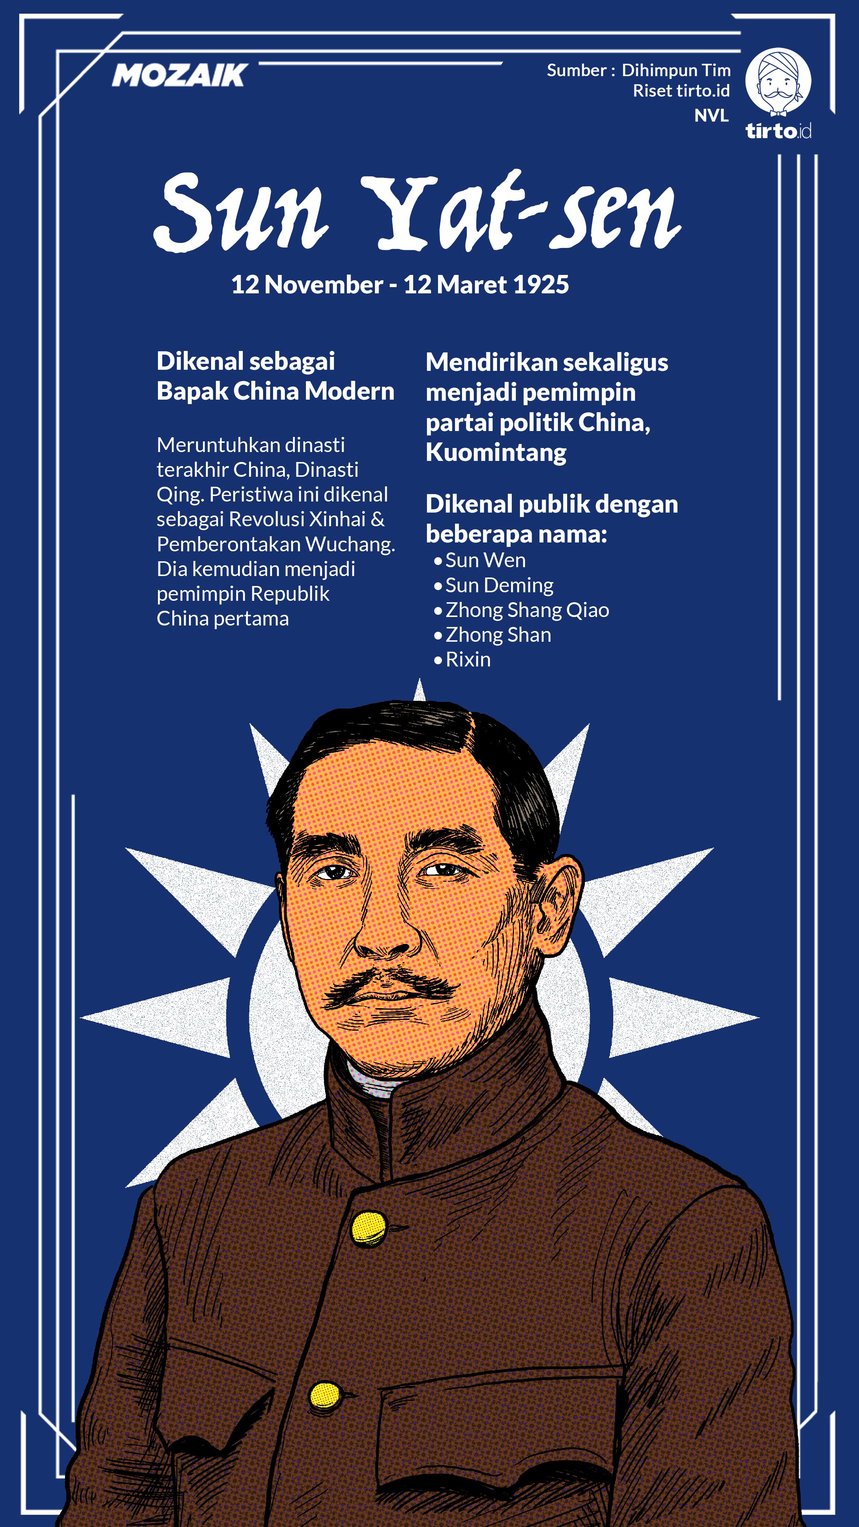 Infografik Mozaik Sun Yat-sen